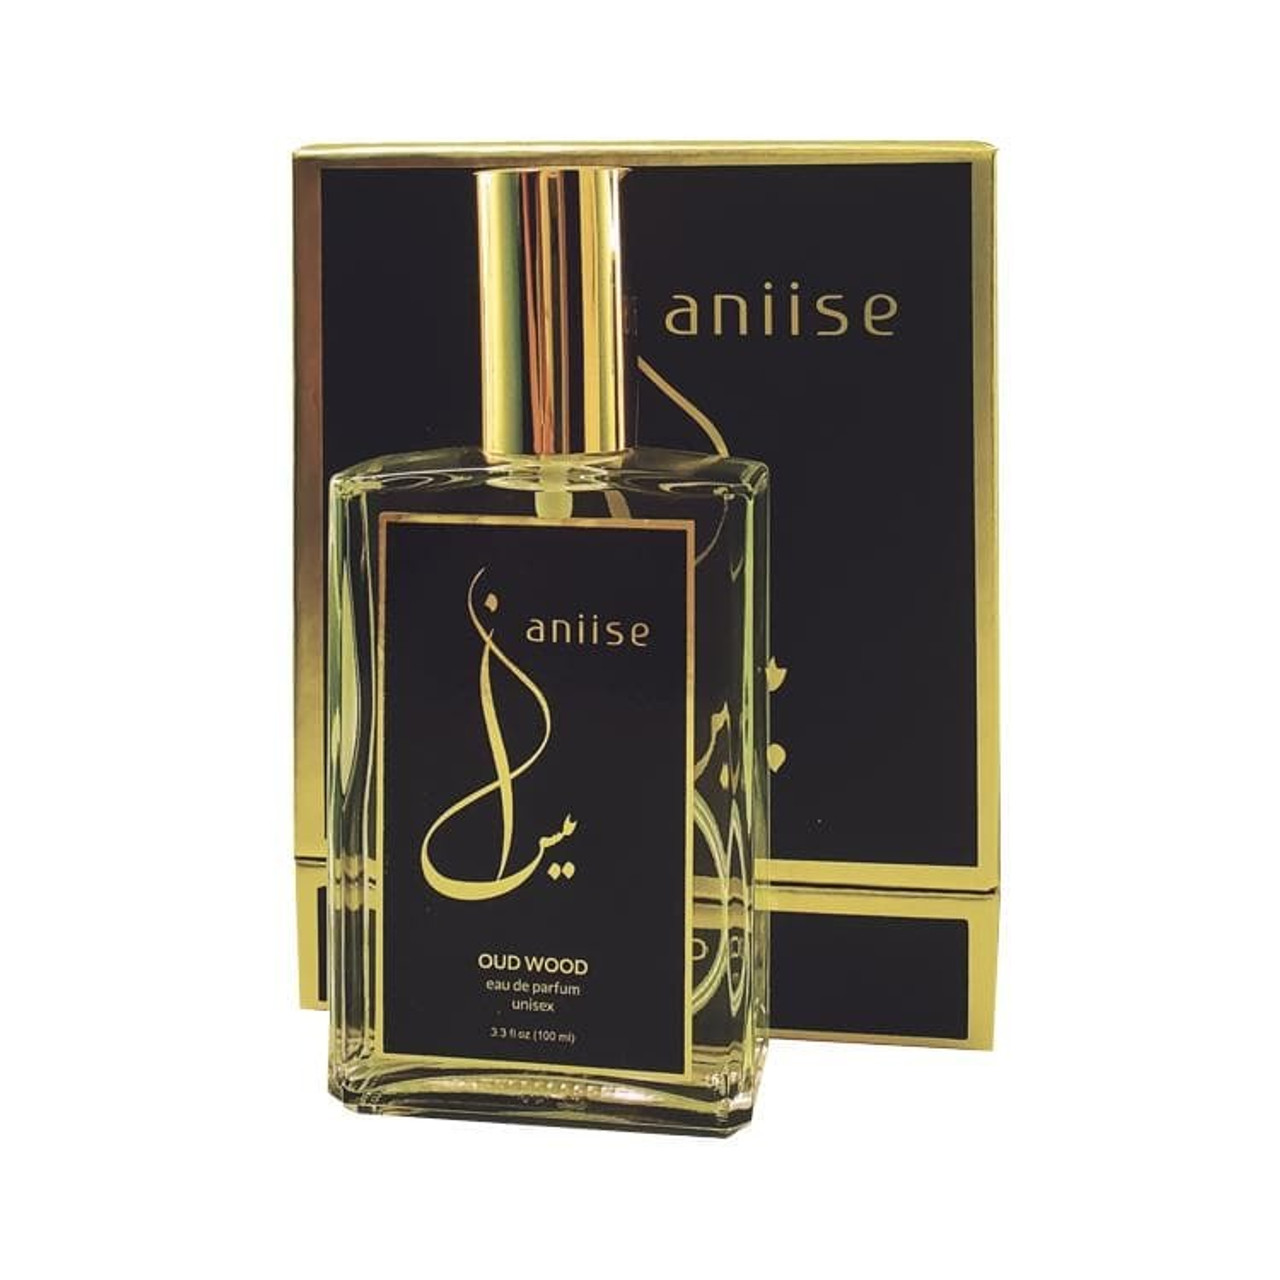 Aniise Eau de Parfum Oud Wood - 3.3 oz